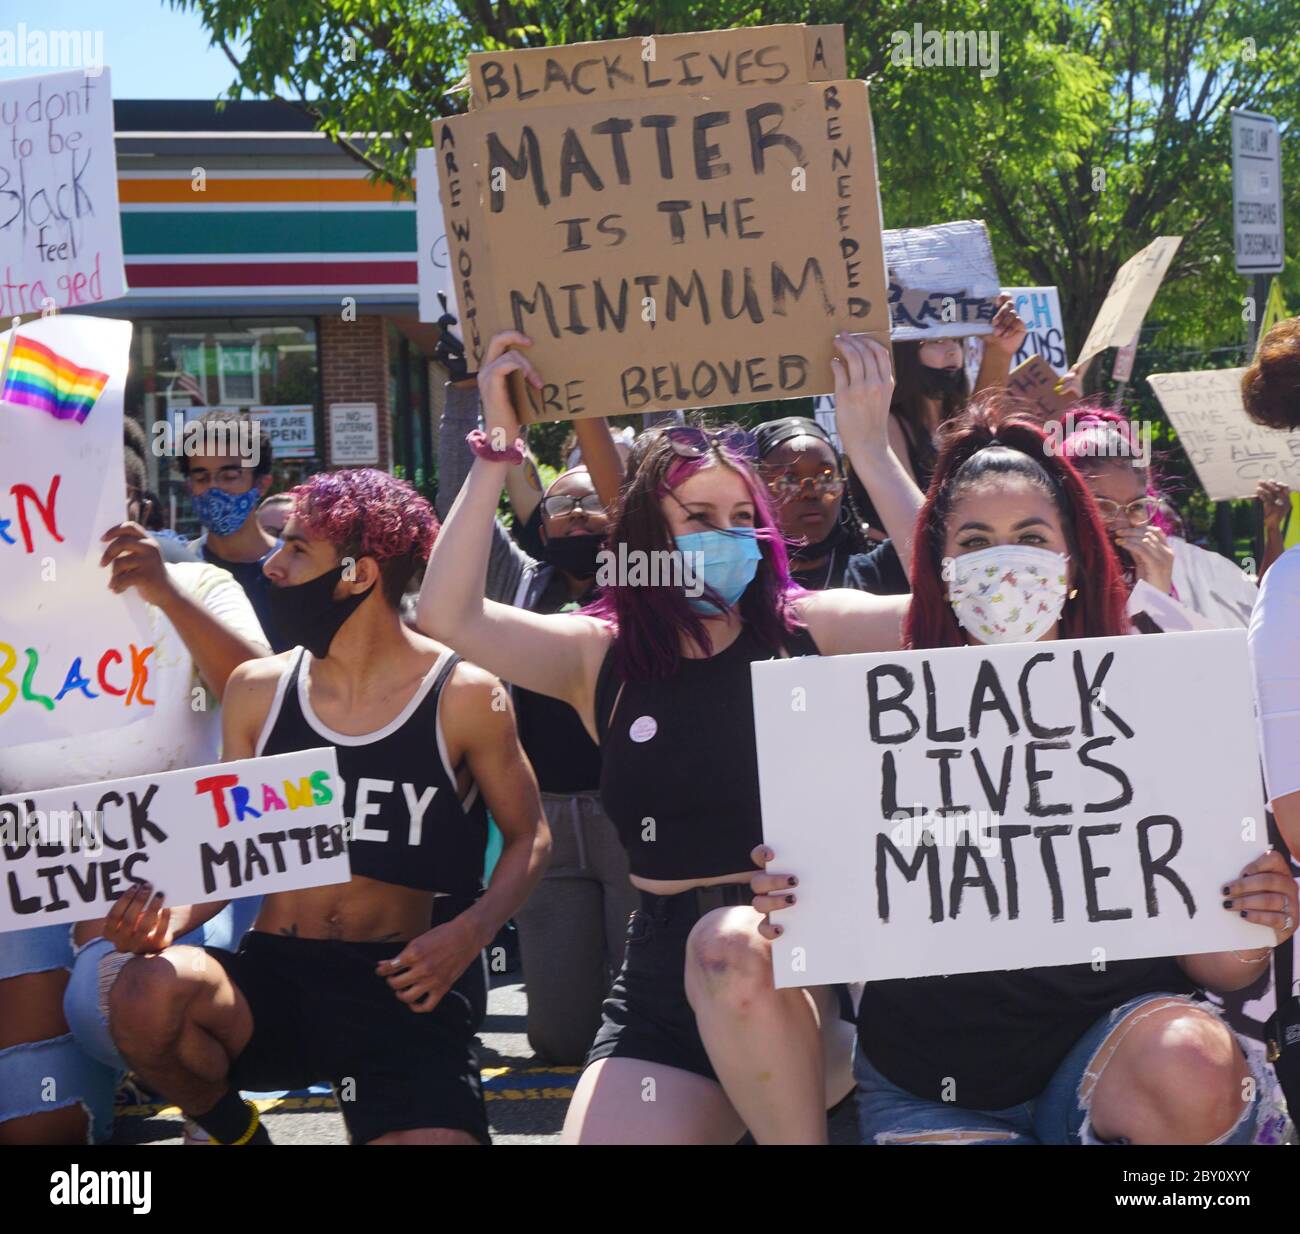 George Floyd Black Lives Matter Protest - jeunes qui prennent un genou tenant des signes Black Lives Matter - Ridgefield Park, New Jersey, USA 8 juin 202 Banque D'Images